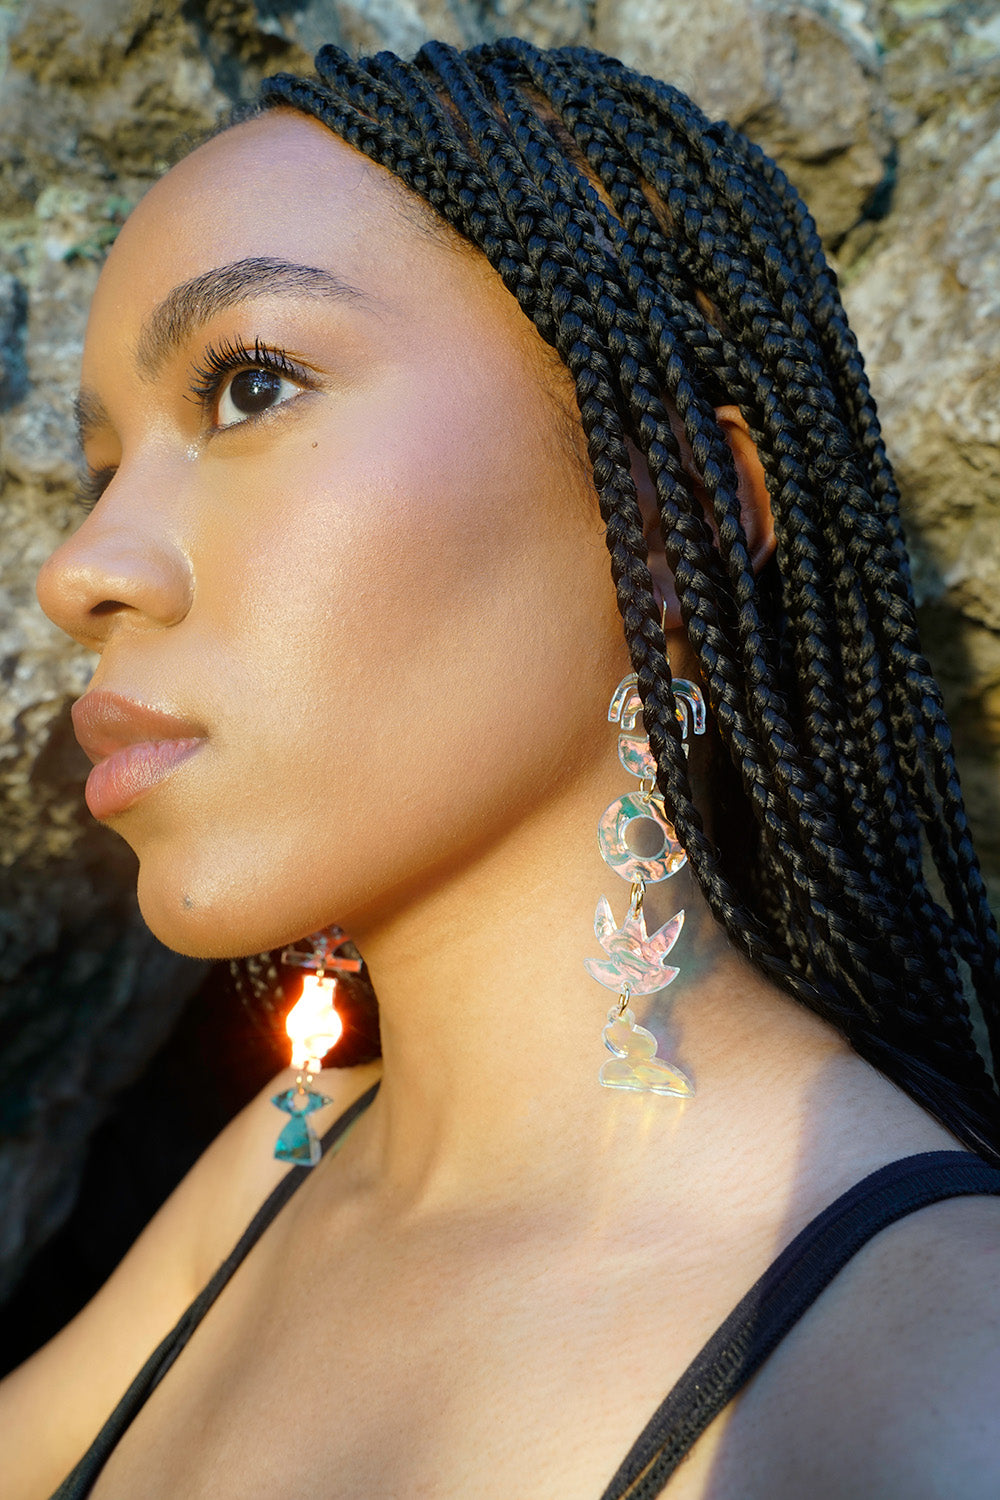 Mobile earrings in iridescent ripple